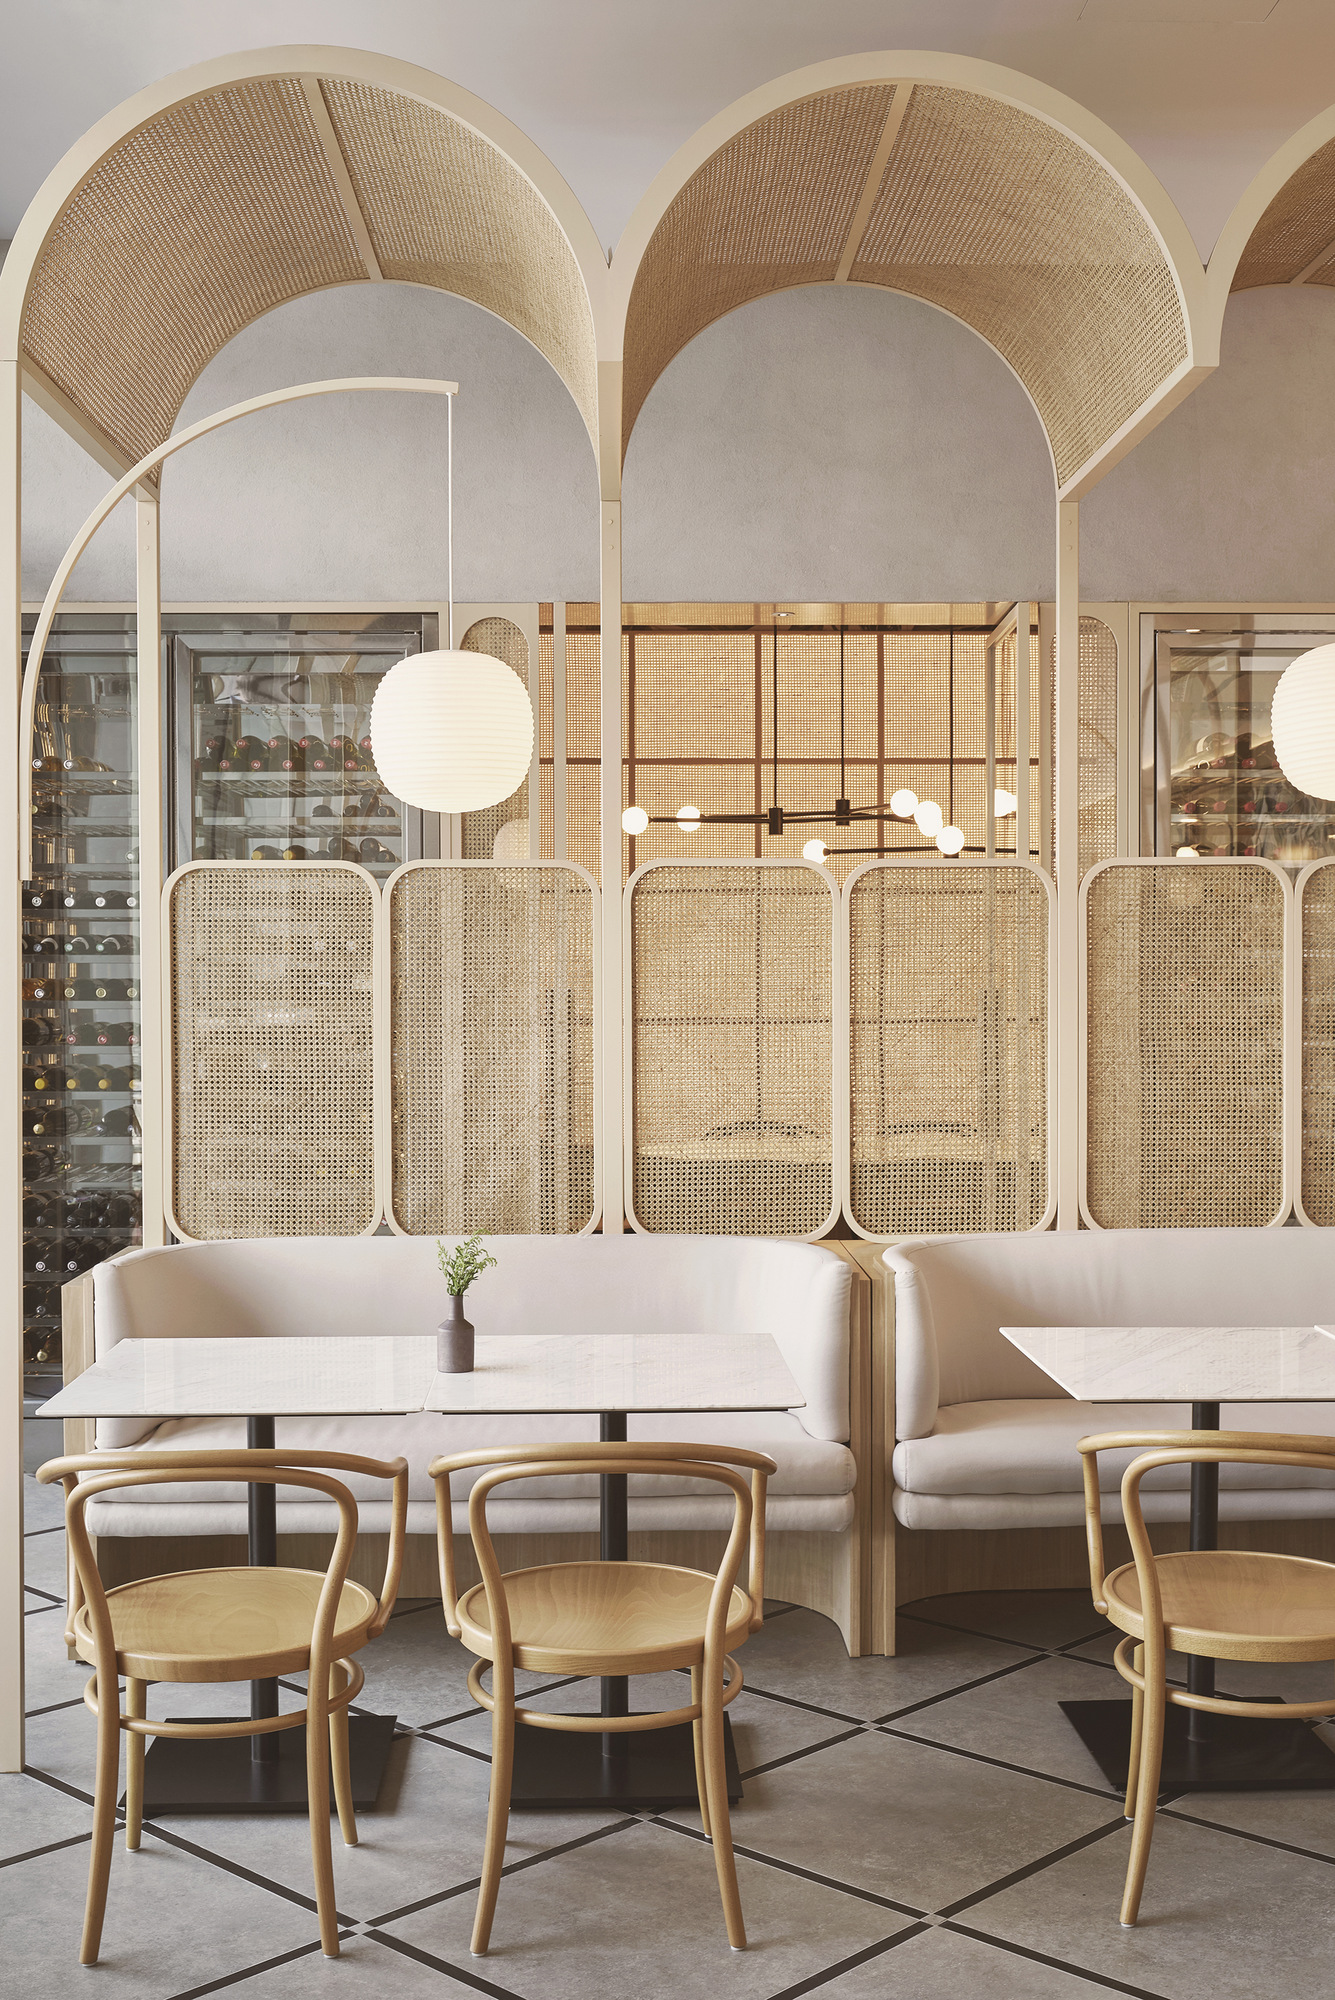 图片[5]|Oxalis餐厅|ART-Arrakis | 建筑室内设计的创新与灵感